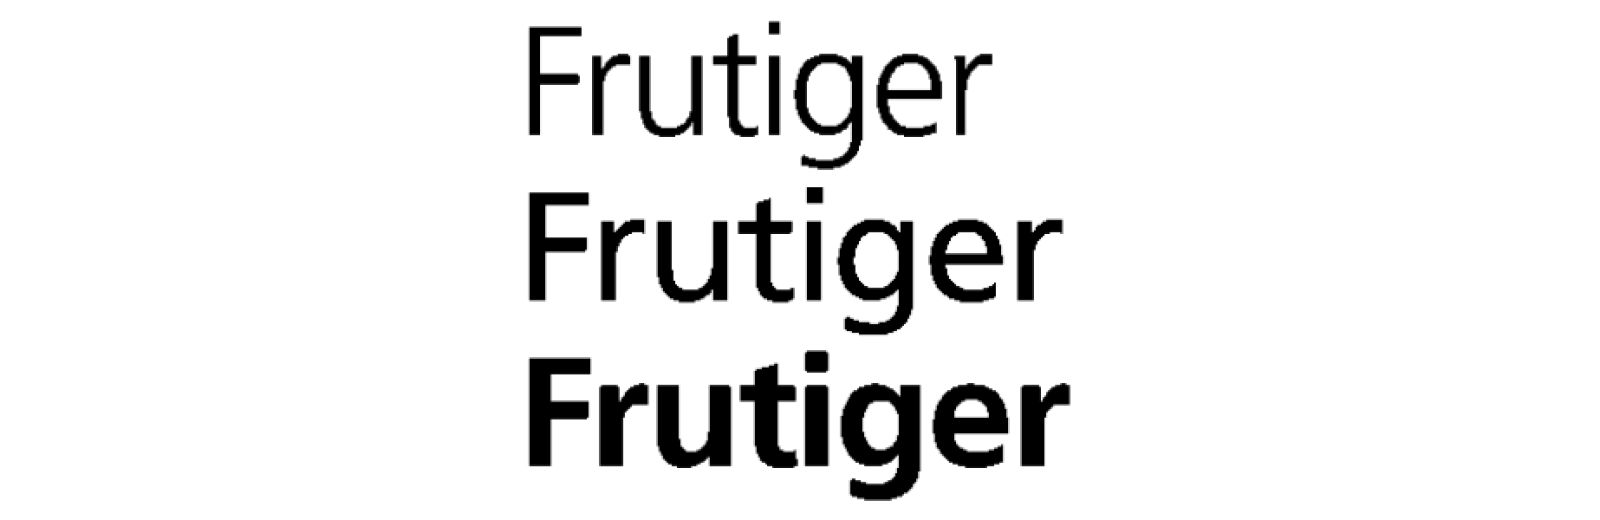 Frutiger font